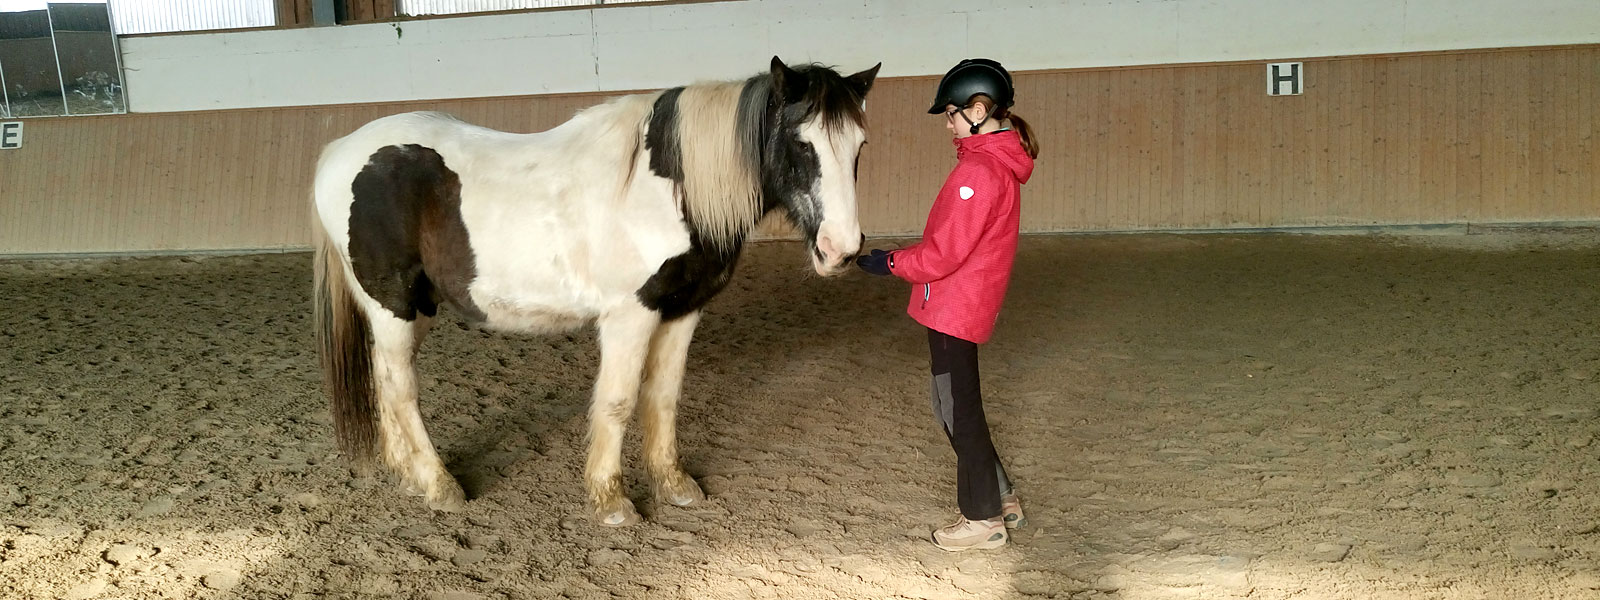 Kind baut eine Beziehung zum Pferd auf